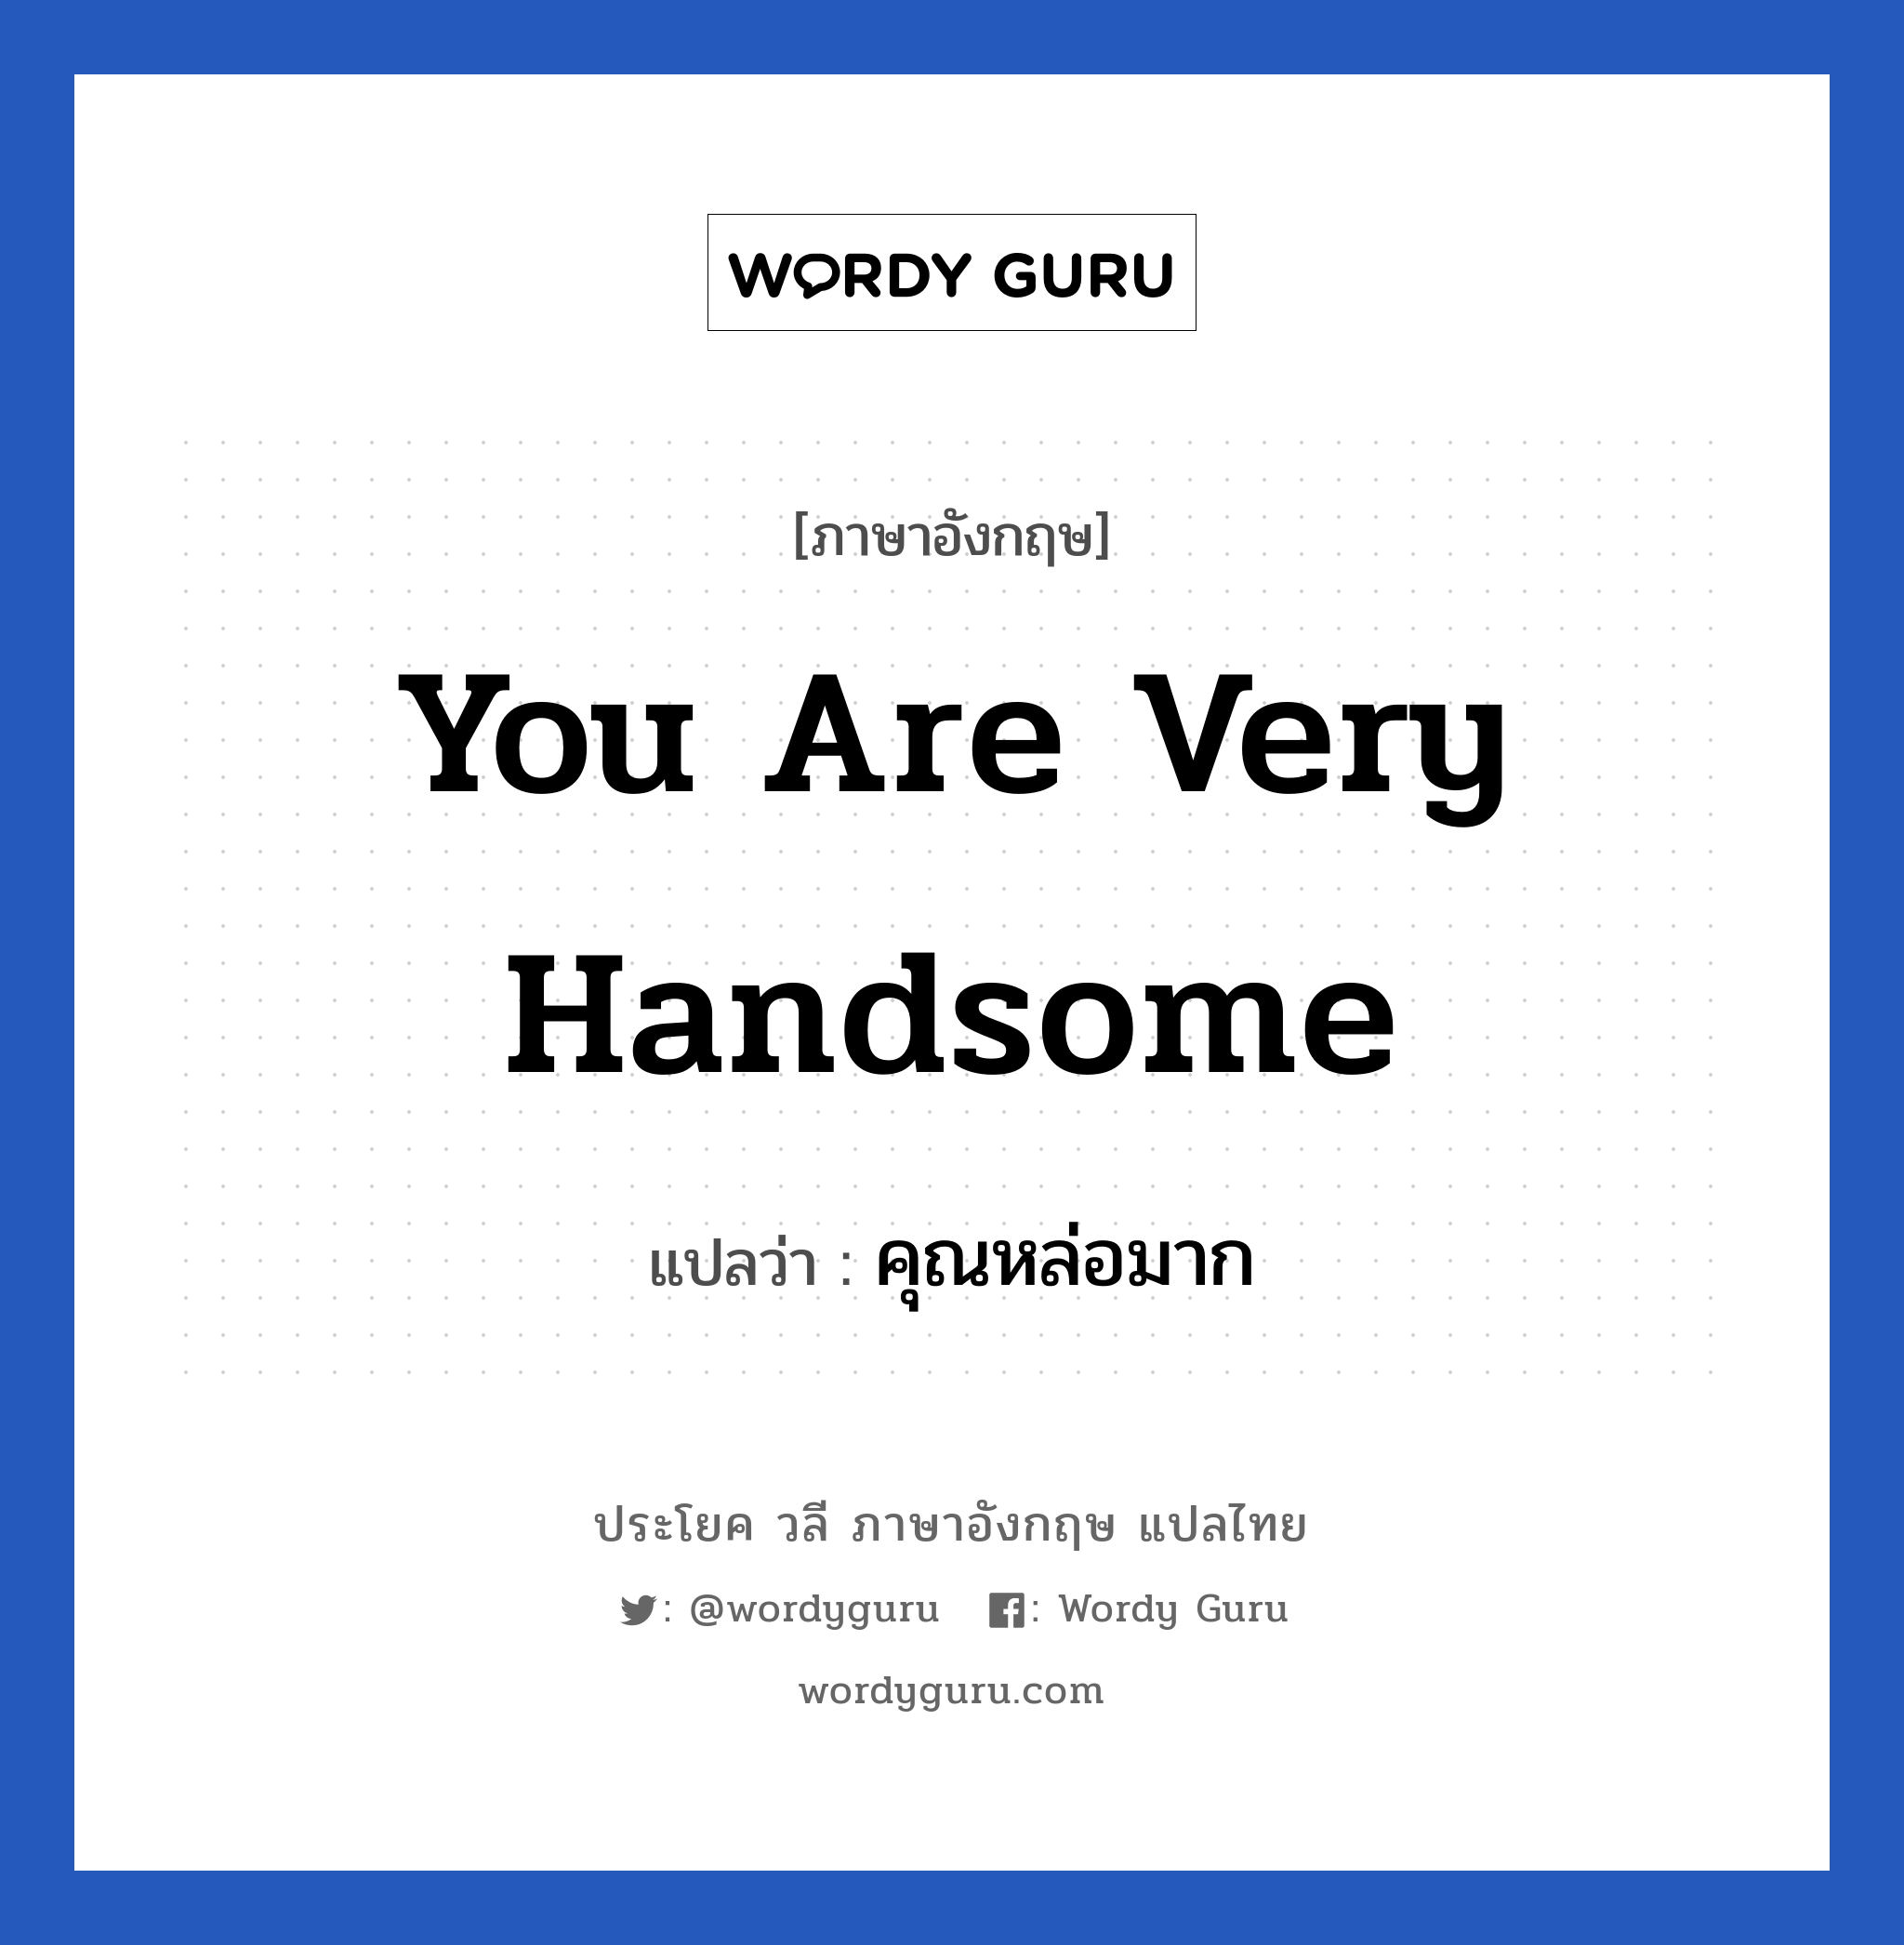 You are very handsome แปลว่า?, วลีภาษาอังกฤษ You are very handsome แปลว่า คุณหล่อมาก หมวด คำชมเชย